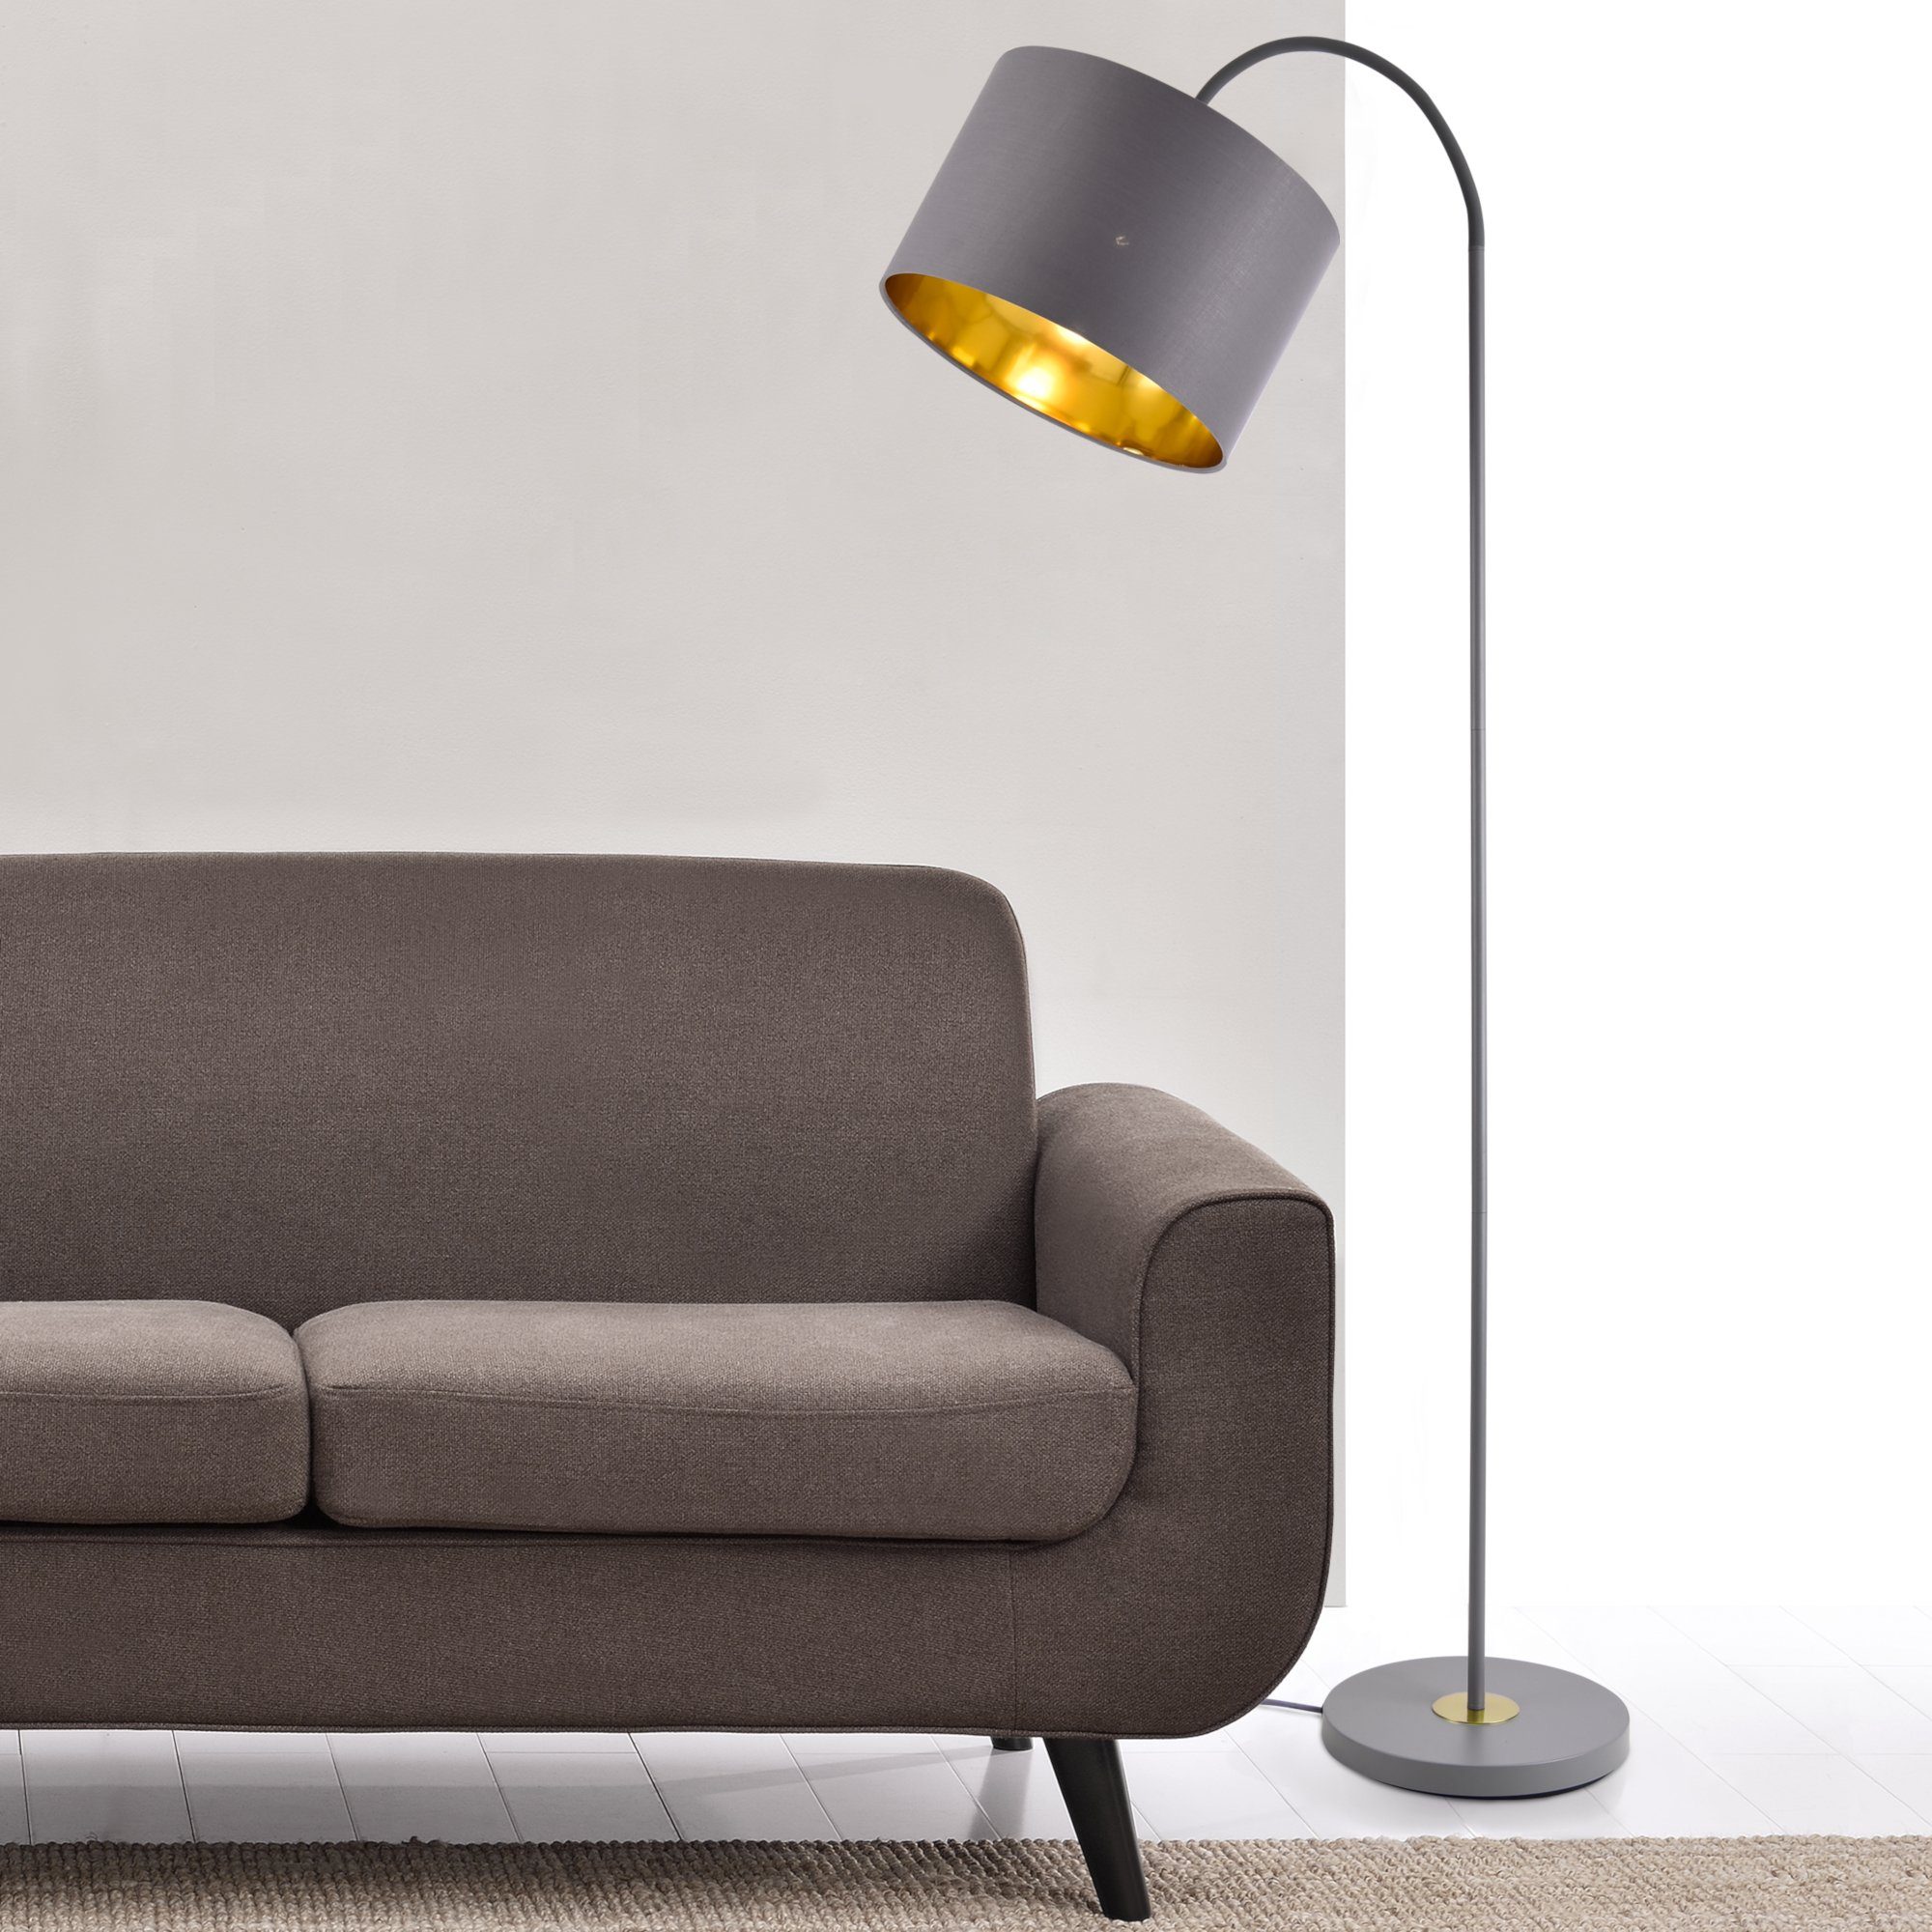 Metall ohne Lampe Design Stehlampe, »Toledo« lux.pro Leuchtmittel, schwenkbare Stehleuchte grau/gold